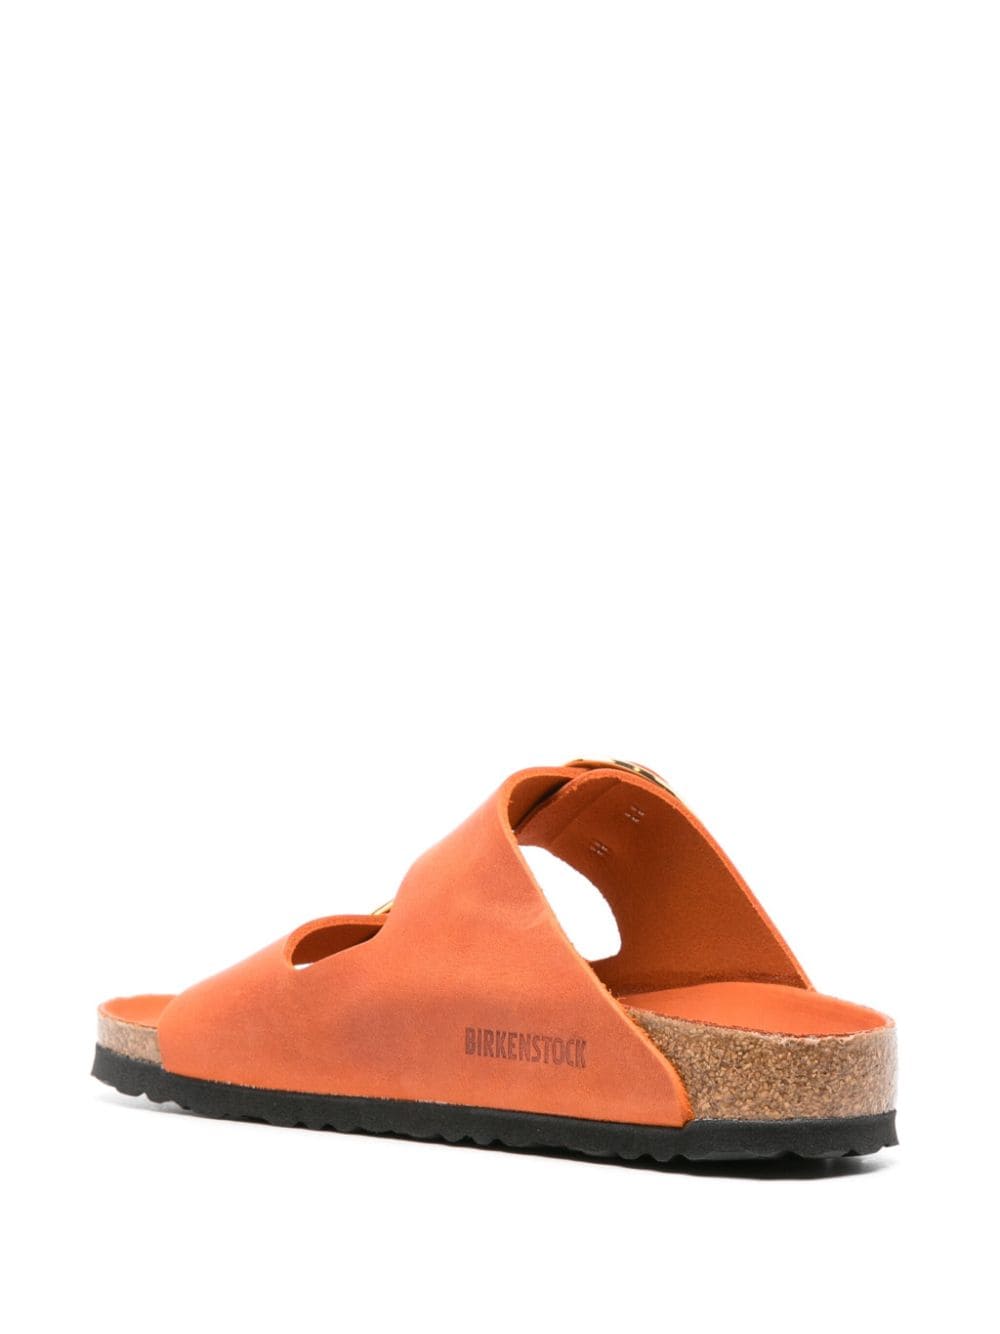 Birkenstock Sandals Orange